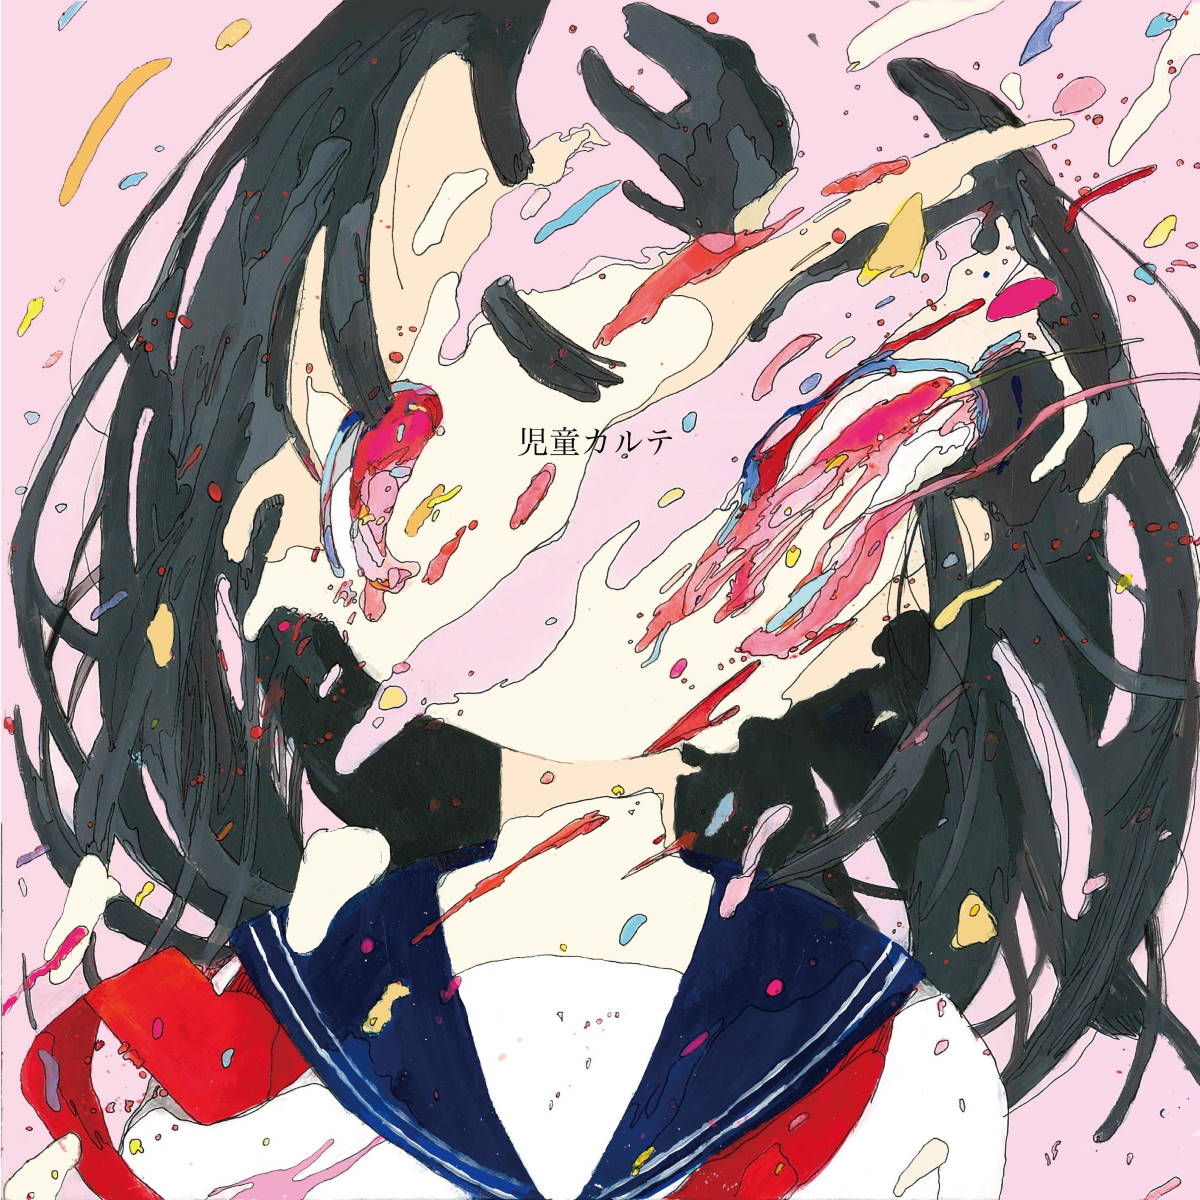 Cover art for『Shinsei Kamattechan - Oyasumi』from the release『Jidou Karte』